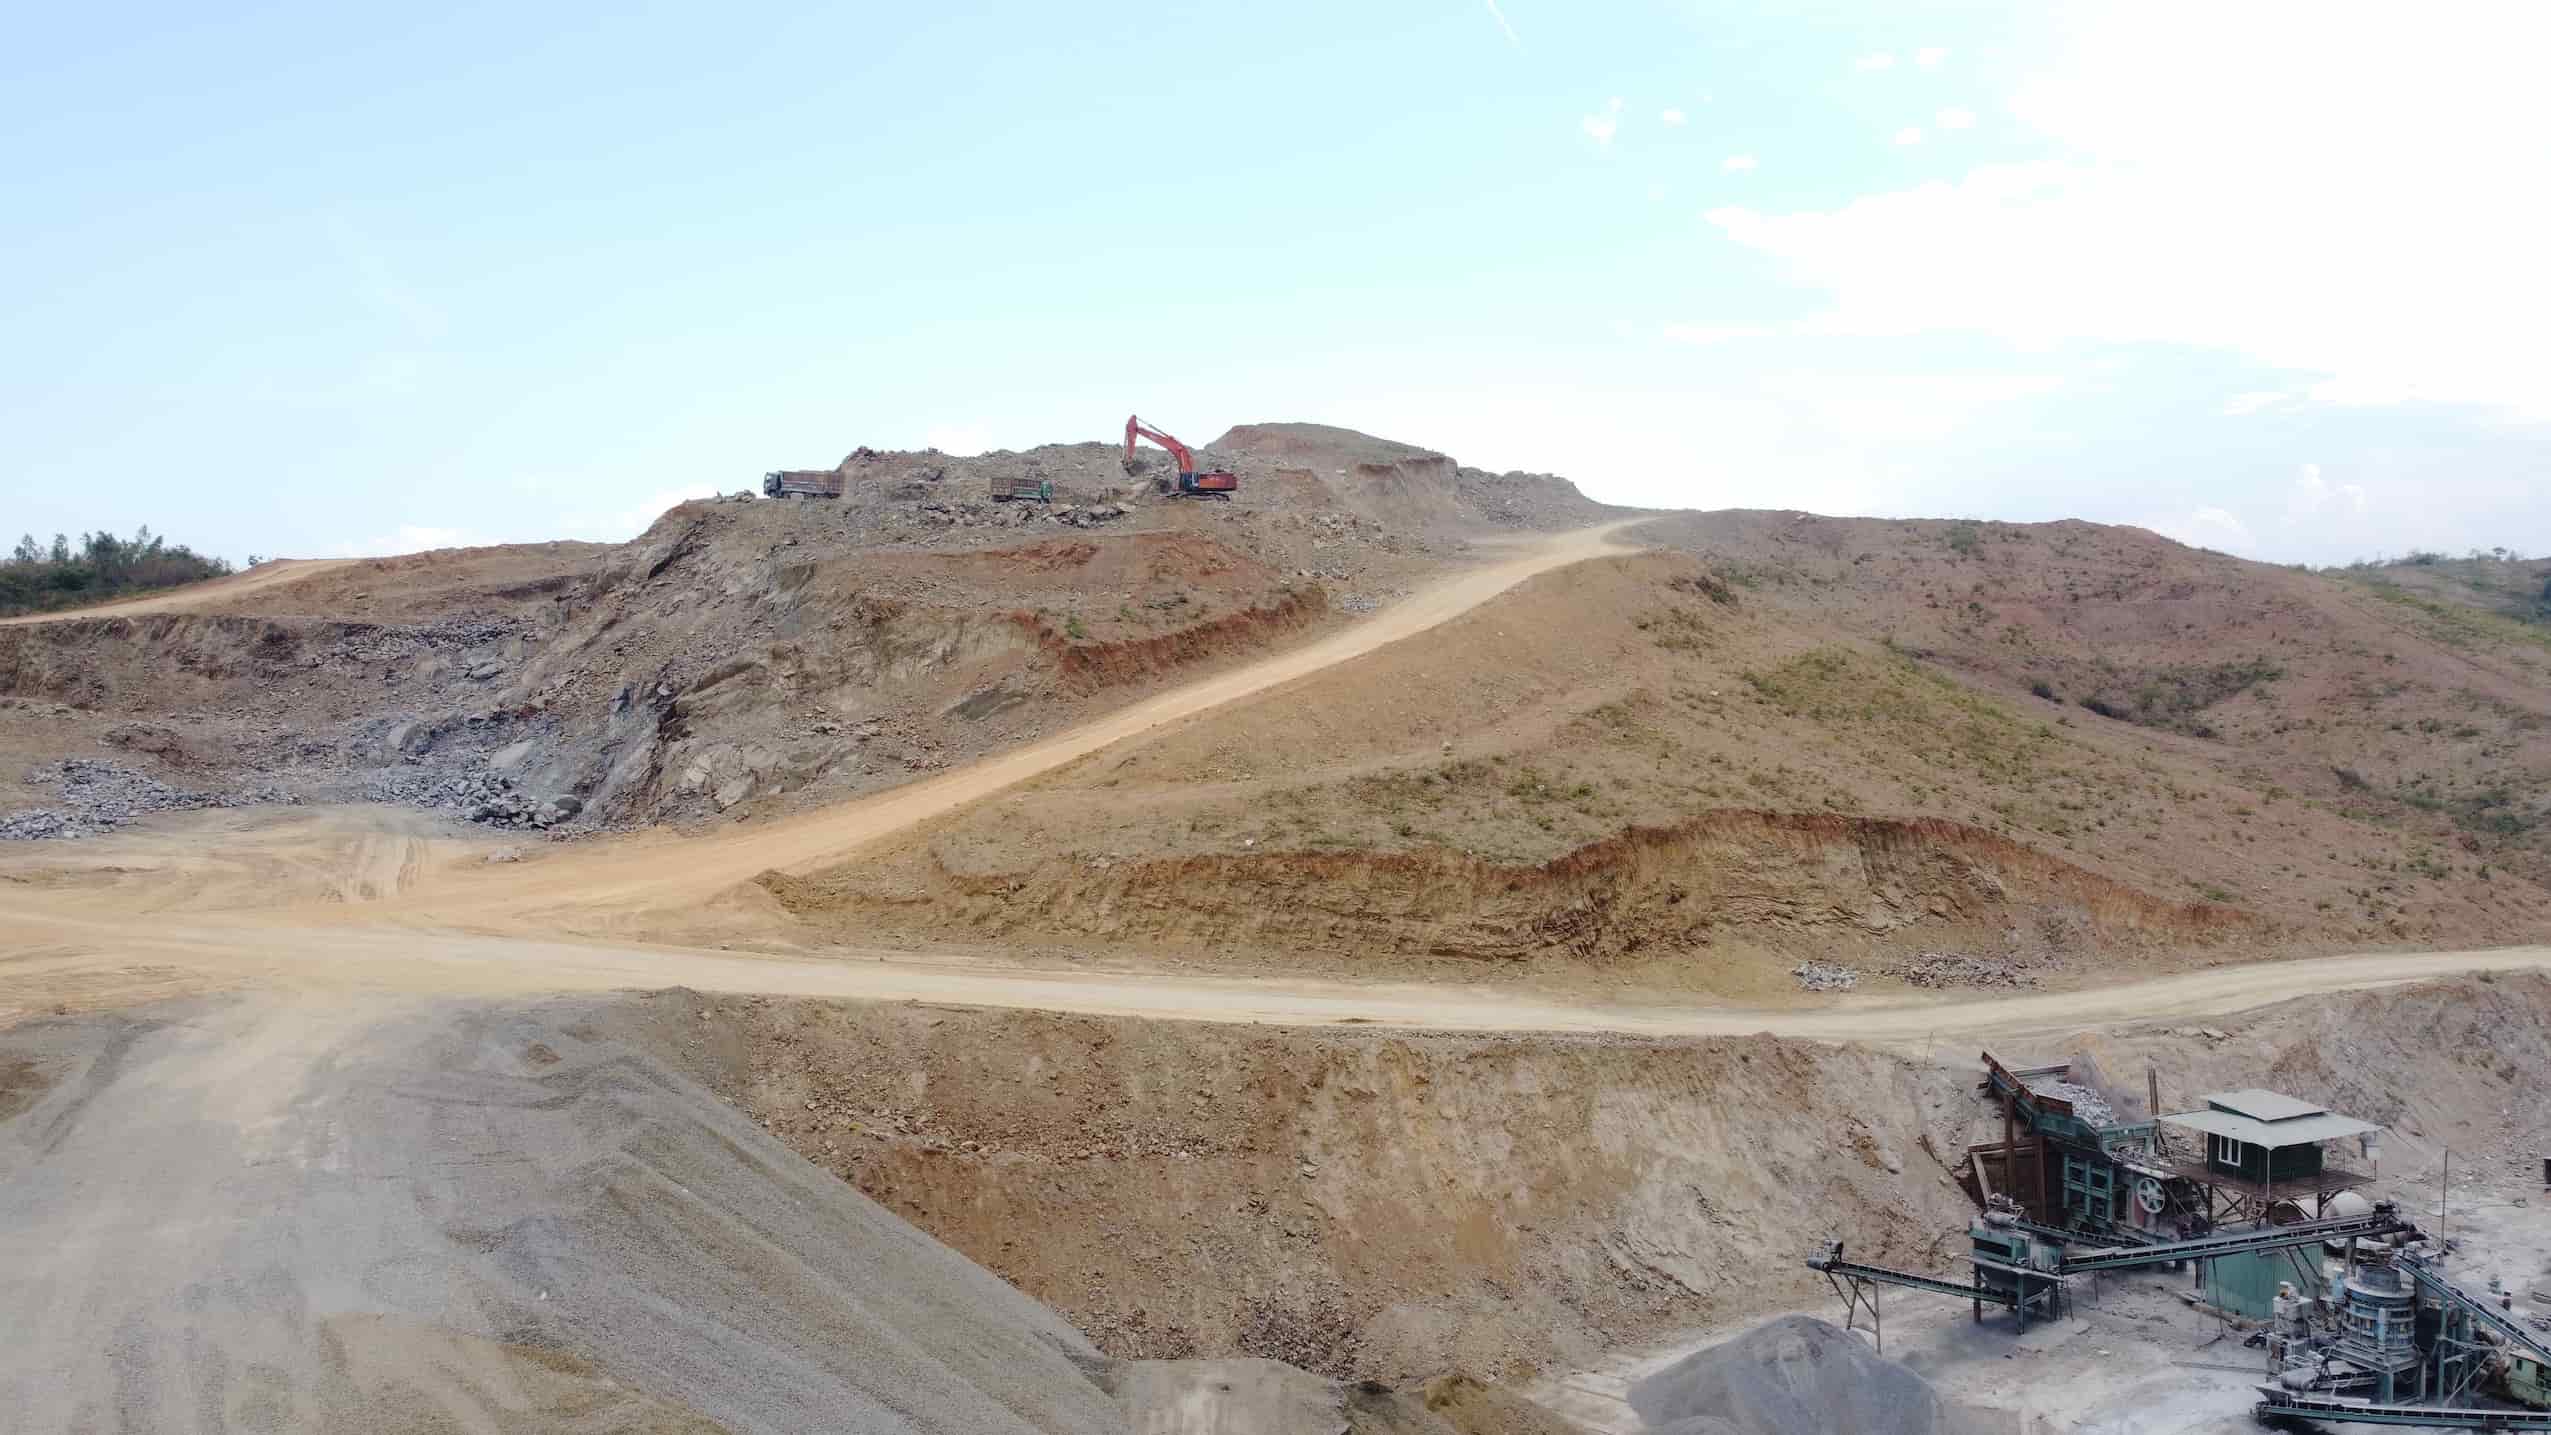 Để đảm bảo nguồn vật liệu cát phục vụ thi công, nhà thầu đề xuất bổ sung mỏ cát hồ Láng Nhớt để sử dụng cho dự án. Ngày 18.3, tỉnh có văn bản điều chỉnh bản xác nhận mỏ cát hồ Láng Nhớt để sử dụng nguồn vật liệu cát cho dự án.  